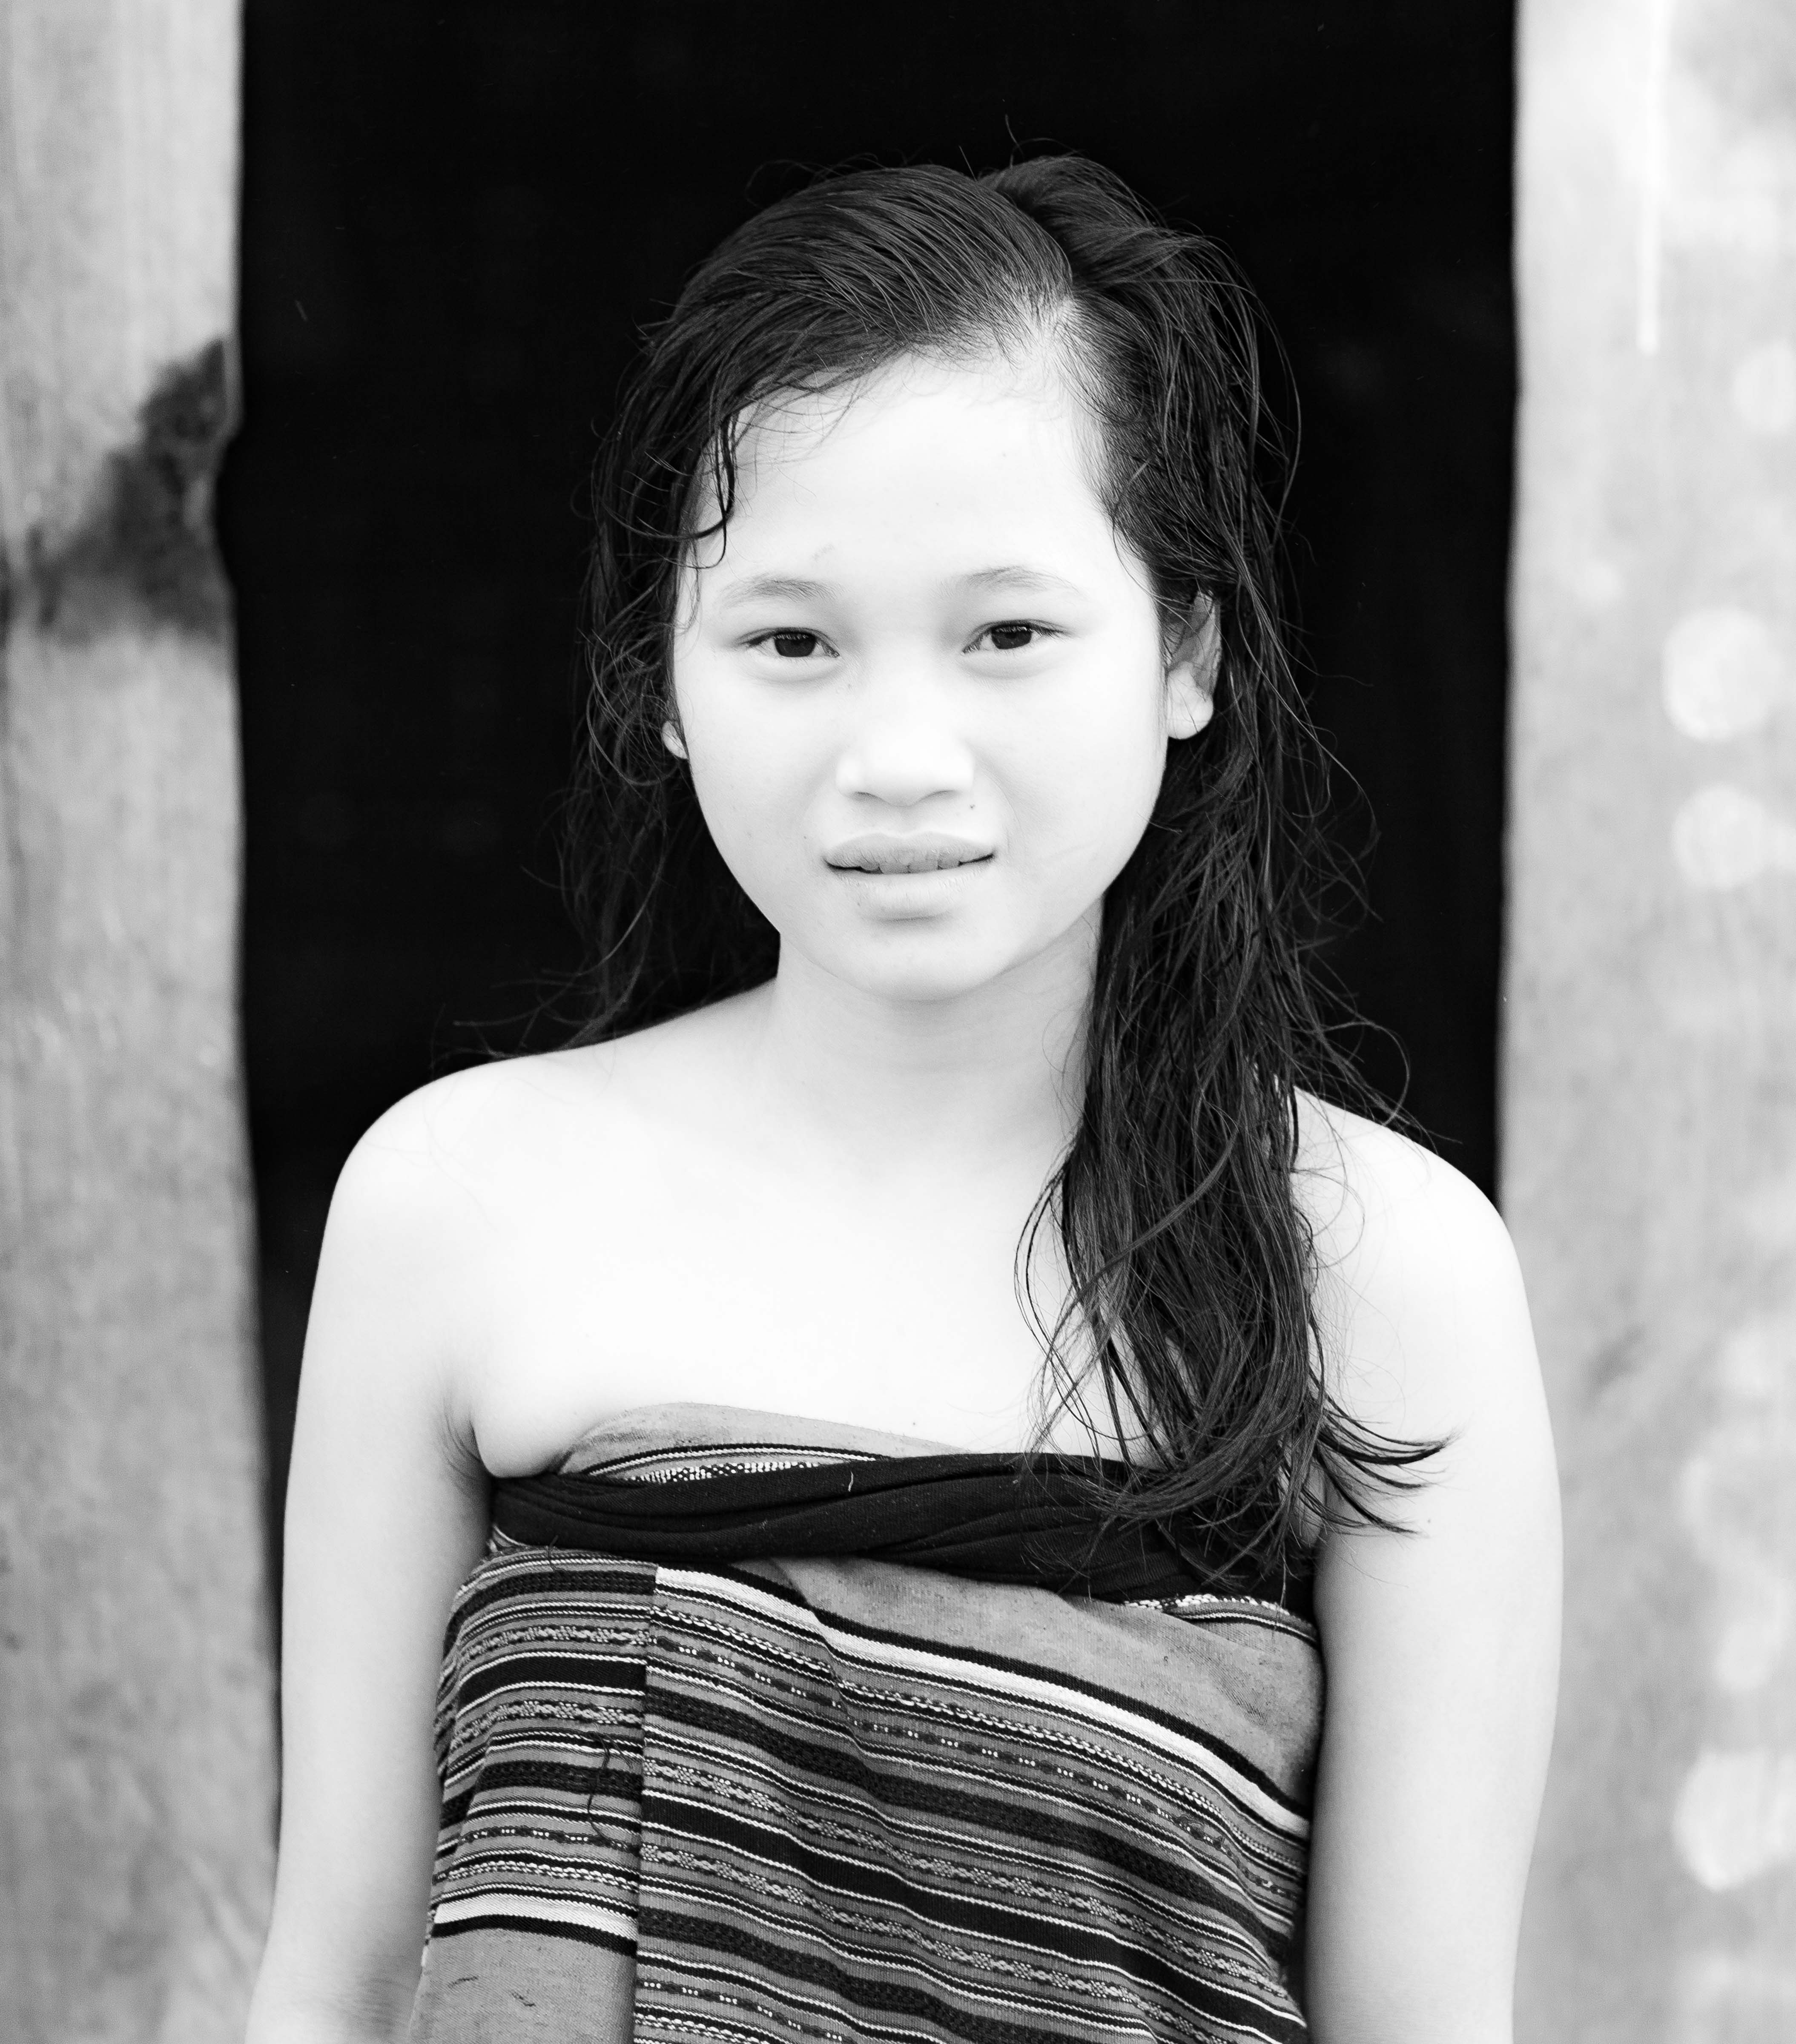 Laos, Xekong Prov, Young Woman, 2011, IMG 3915